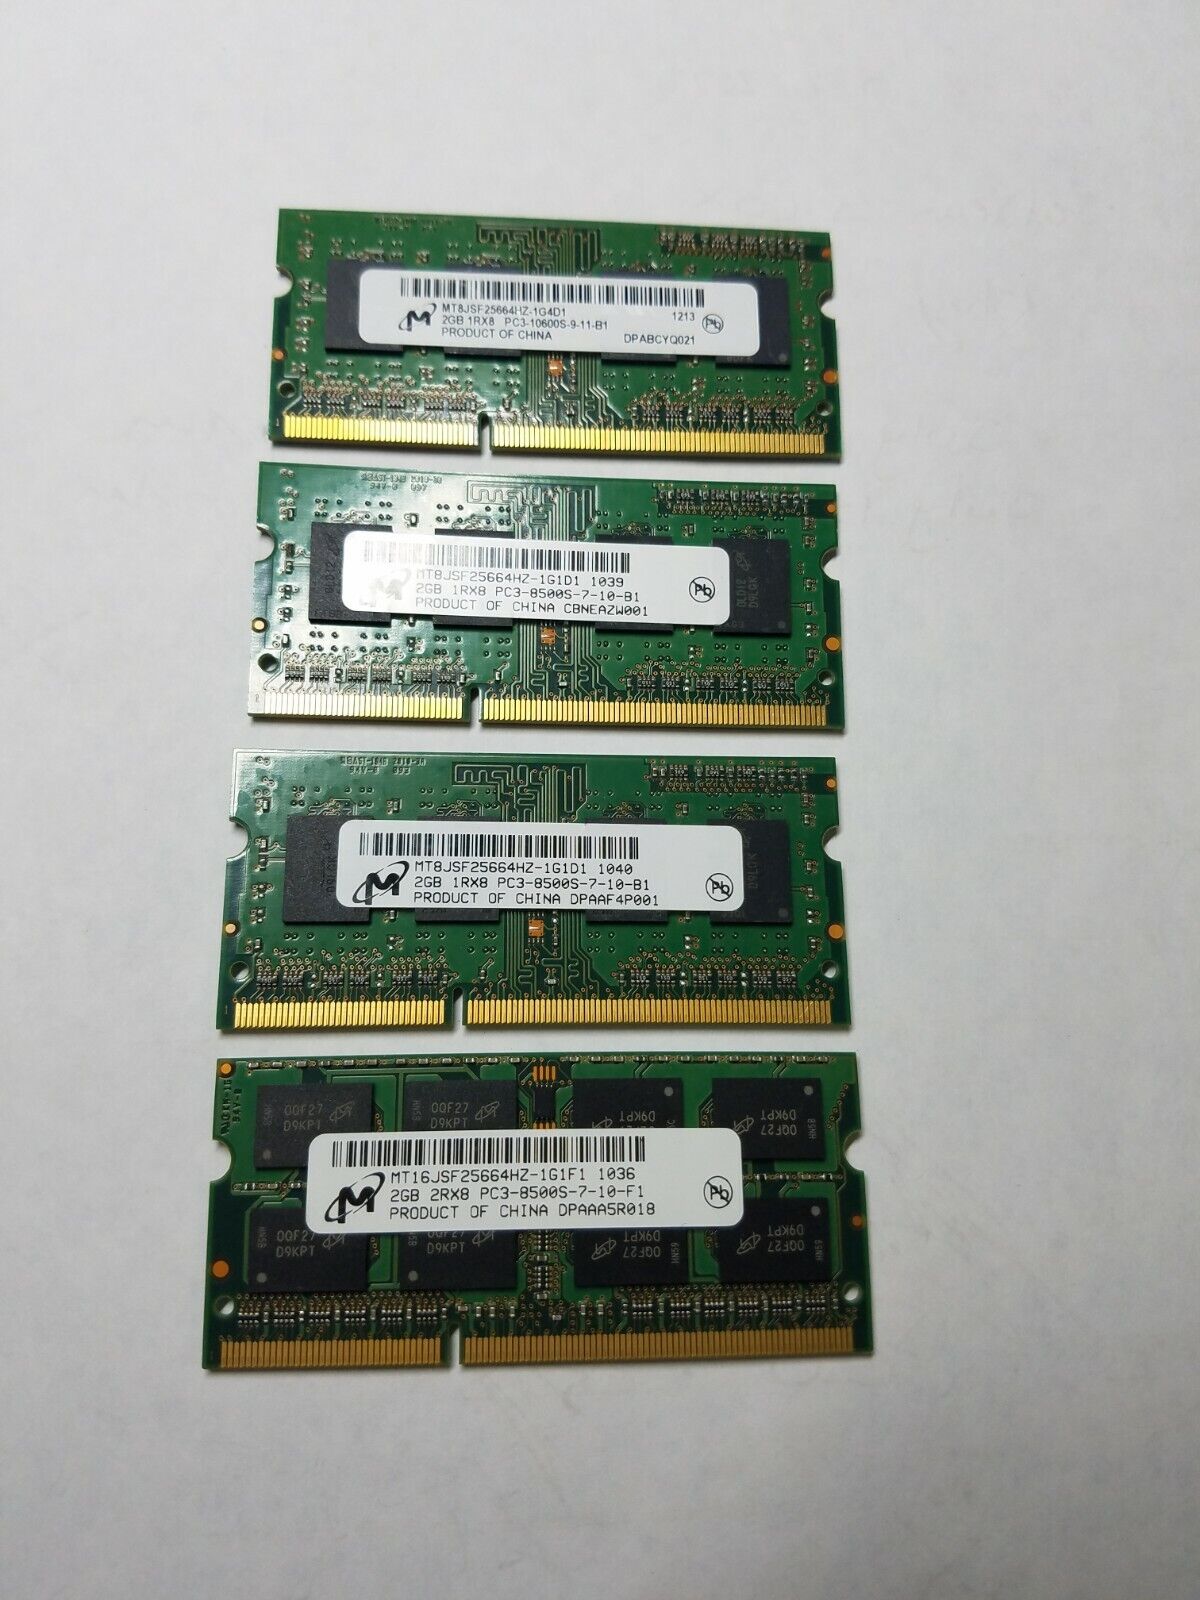 Micron 3GB PC3-8500s RAM Sticks 4 Pack